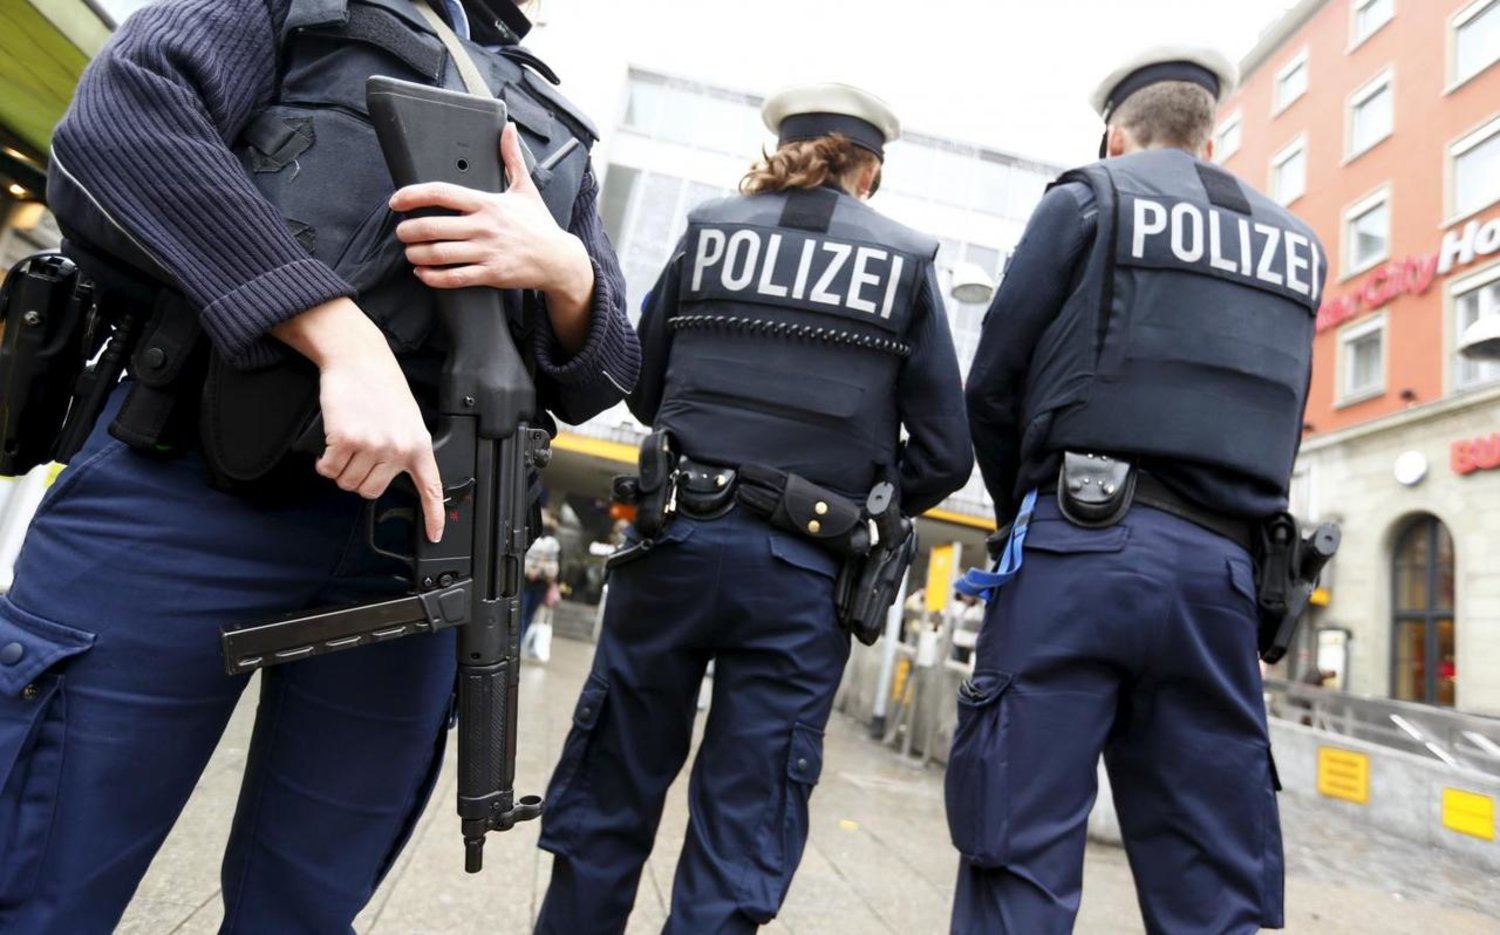 Германы хууль сахиулагчид БНХАУ руу дэвшилтэт технологи нийлүүлсэн байж болзошгүй гурван иргэнээ баривчилжээ